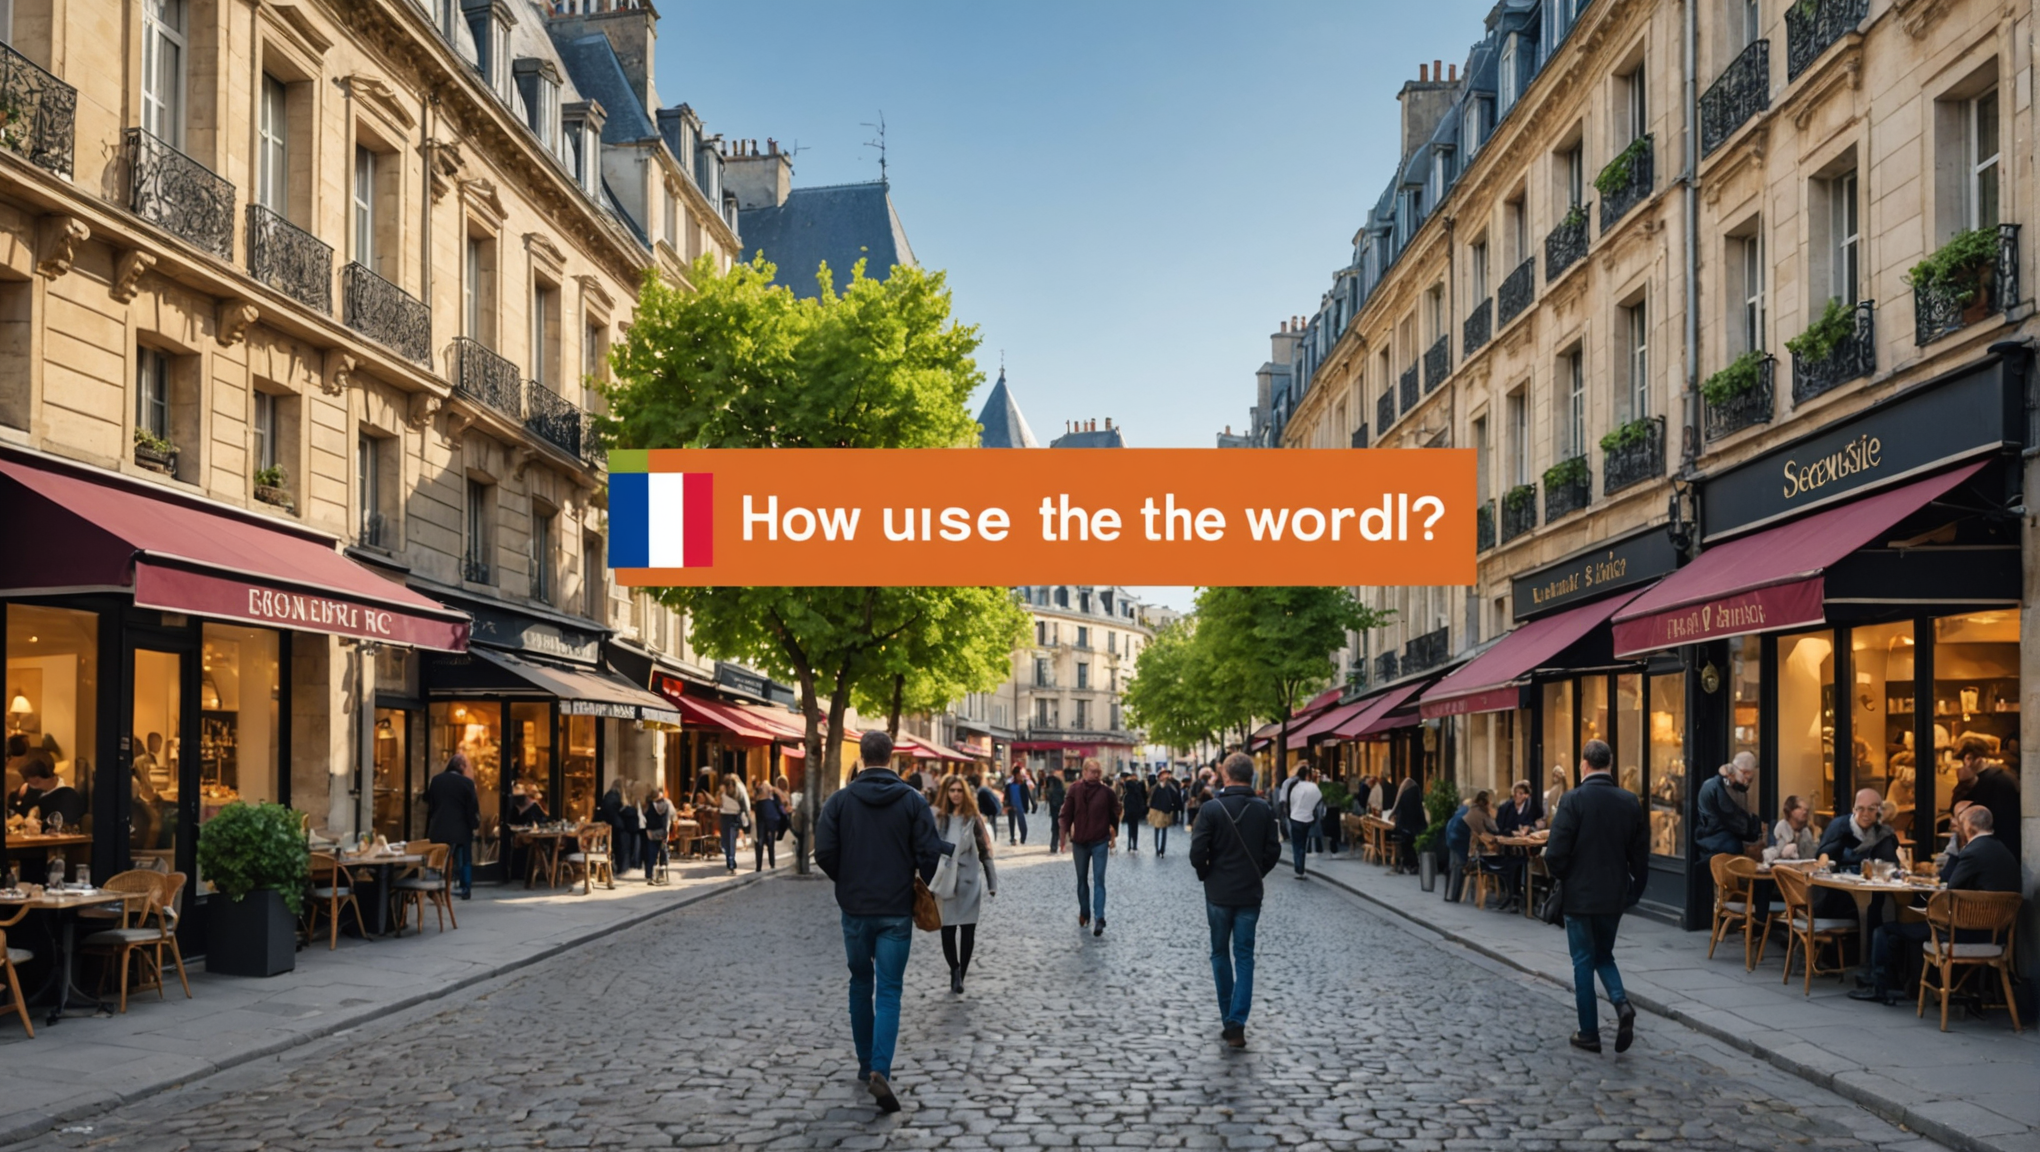 découvrez comment utiliser le pronom personnel 'se' en français à travers des exemples et explications claires dans cet article instructif.